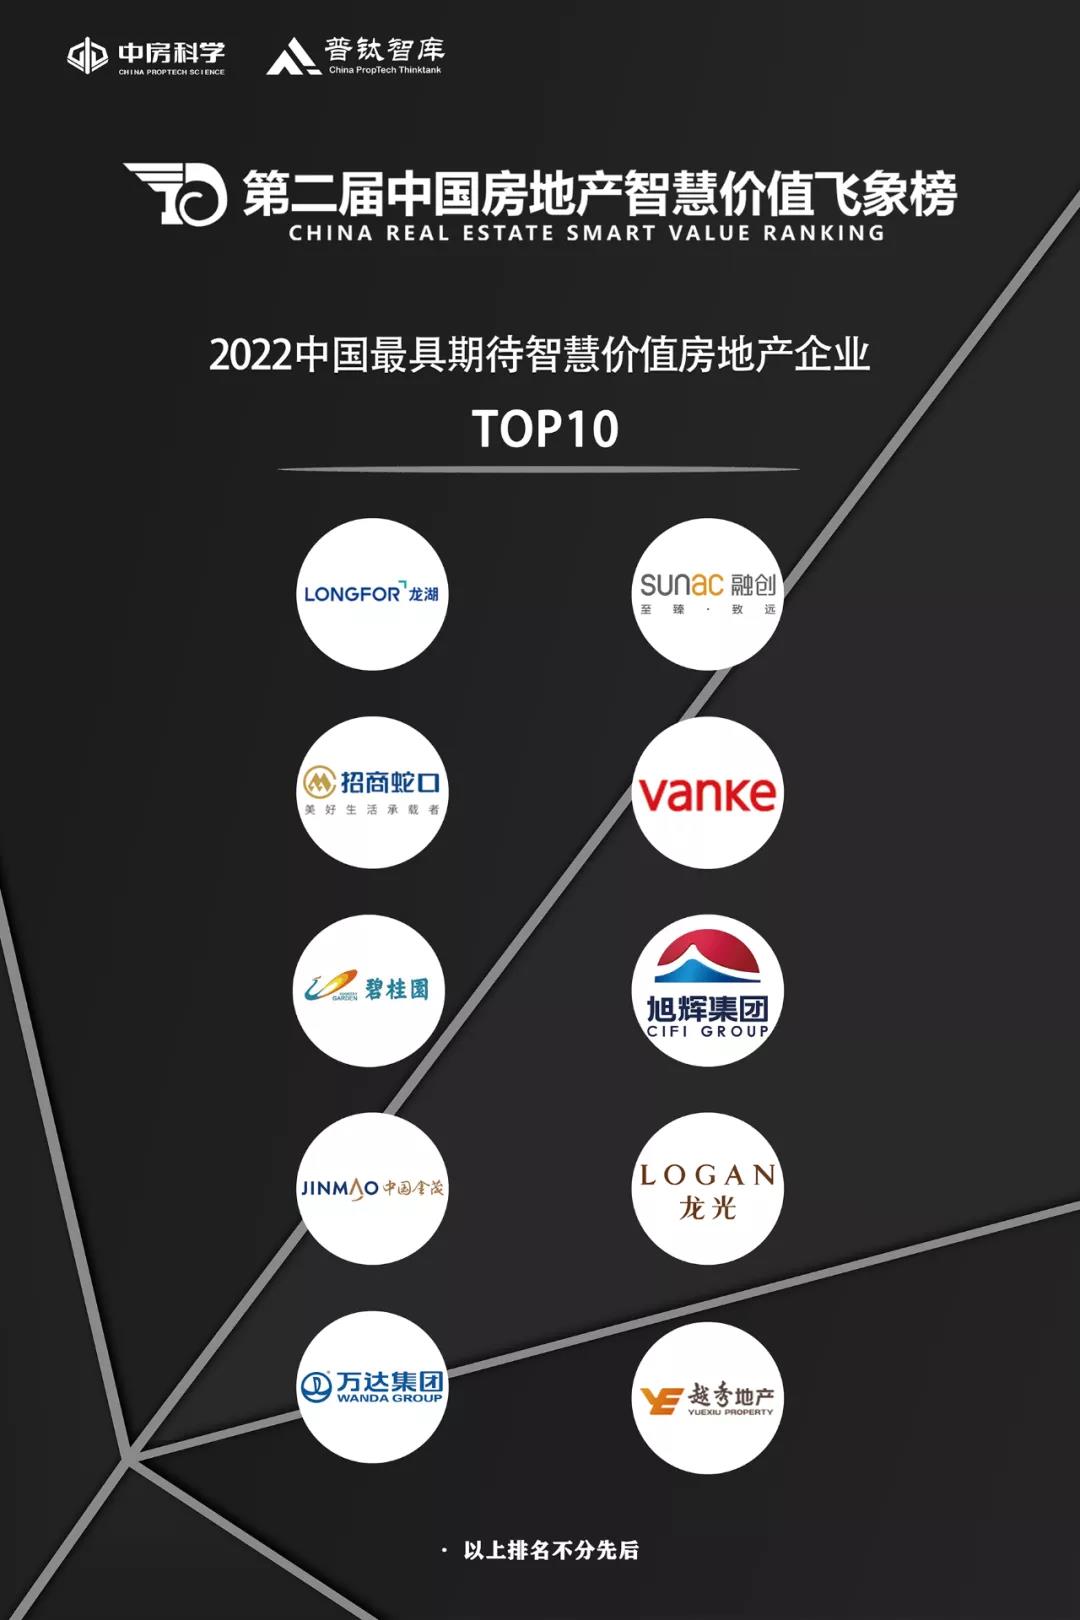 龙光集团荣膺“2022中国最具期待智慧价值房地产企业” 潮商资讯 图1张